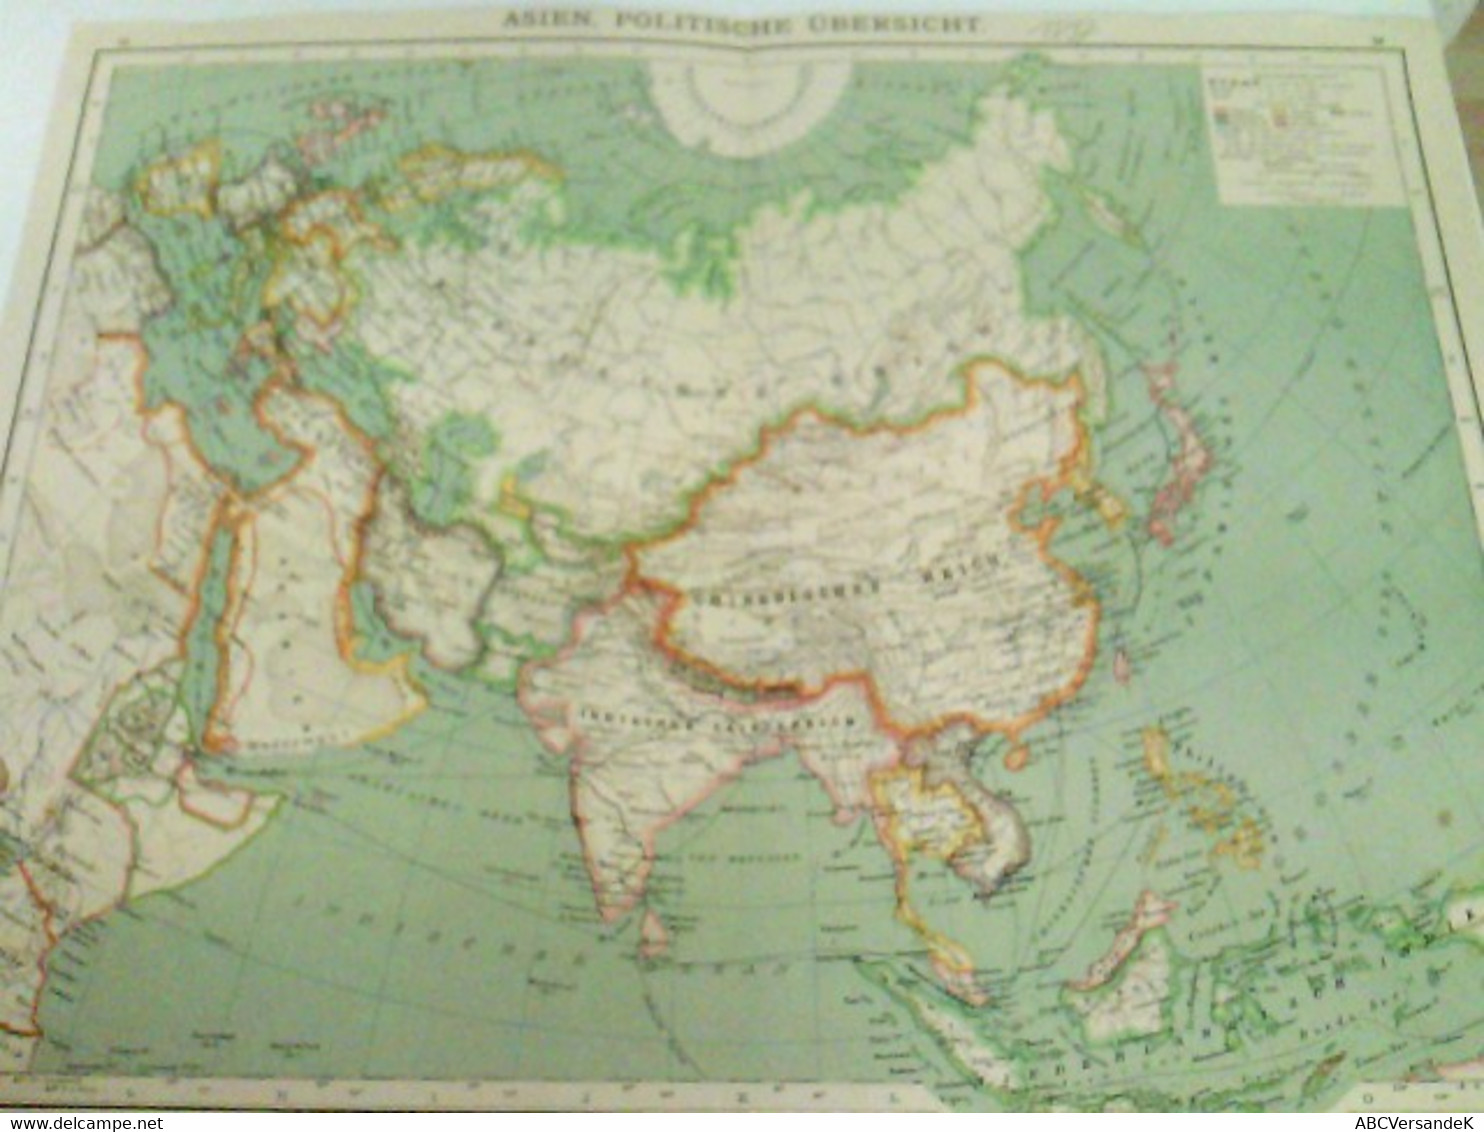 Farblithografie Asien, Politische Übersicht, Maßstab 1 : 35.000.000 - Azië & Nabije Oosten